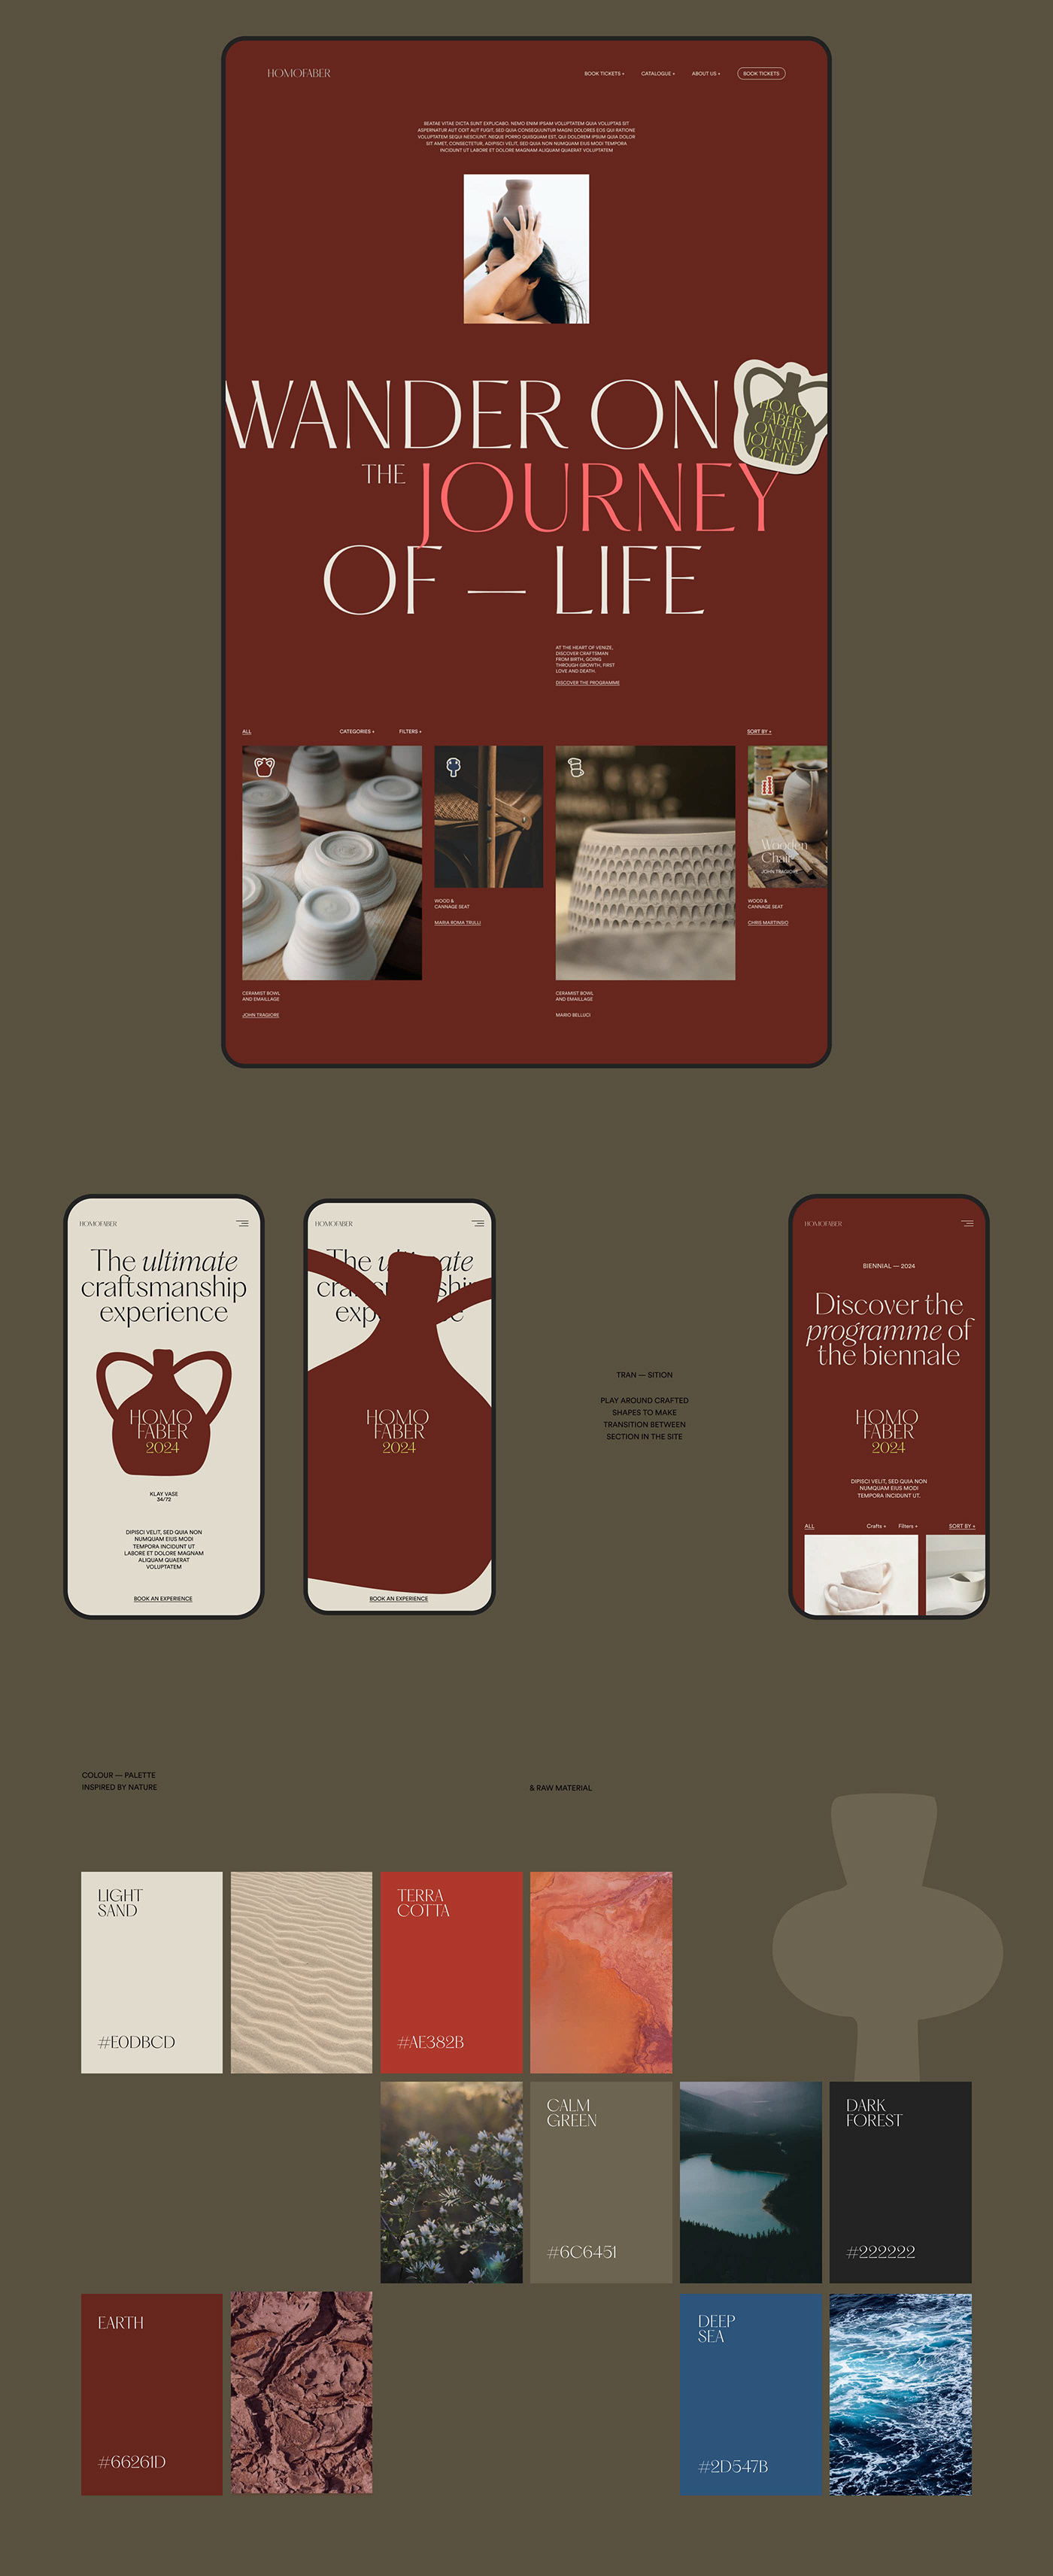 desktop page design with carousel, elegant font, red background, mobile animation, color palette